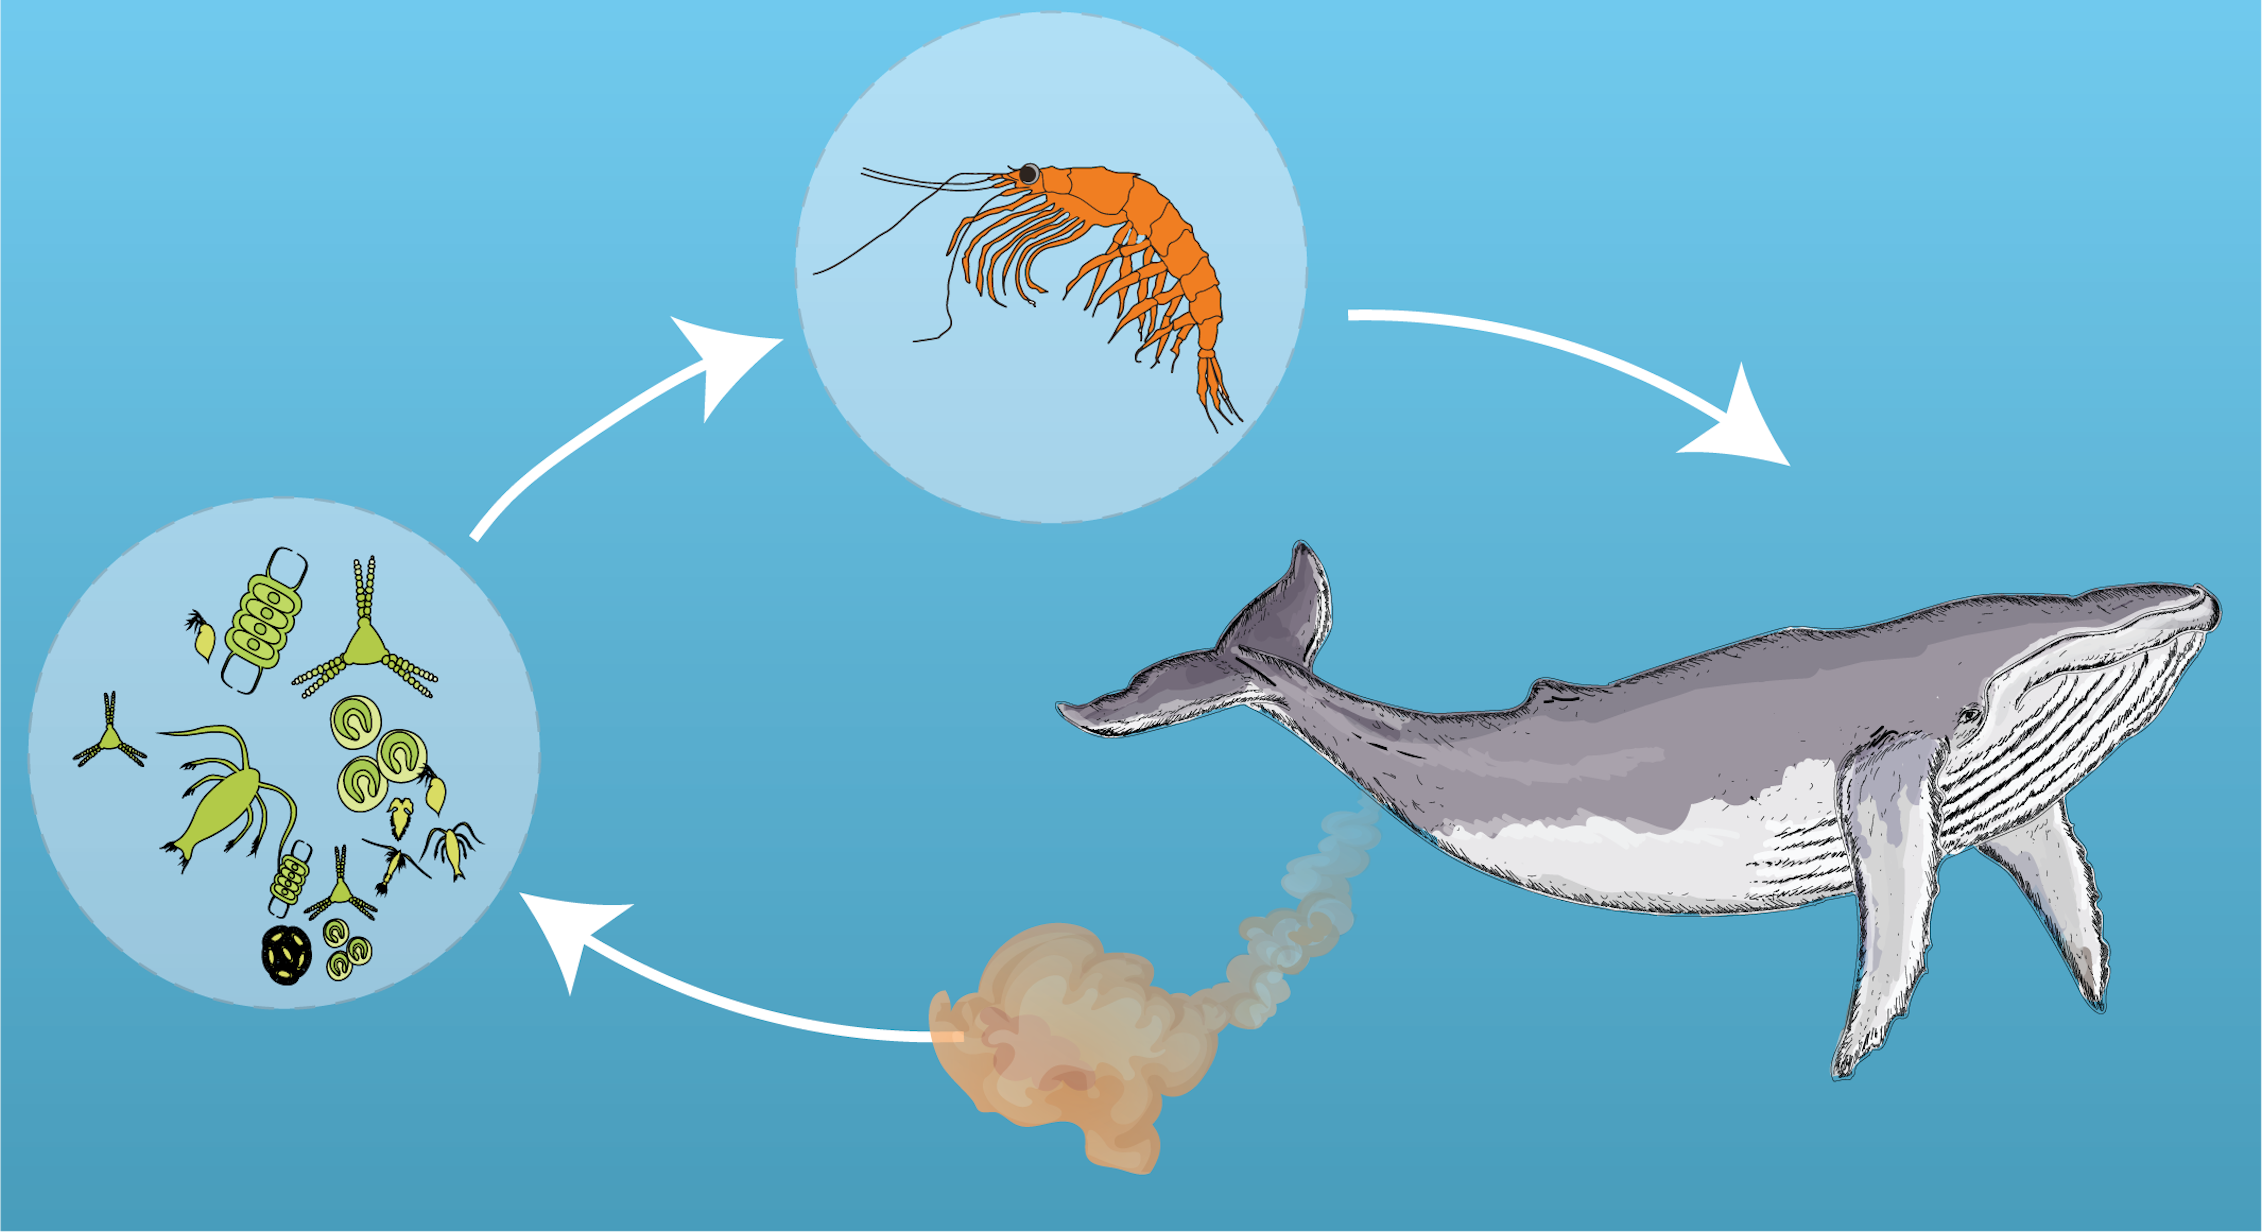 Питание китов. Синий кит питается планктоном. Планктон пища для китов. Кит поедает планктон.